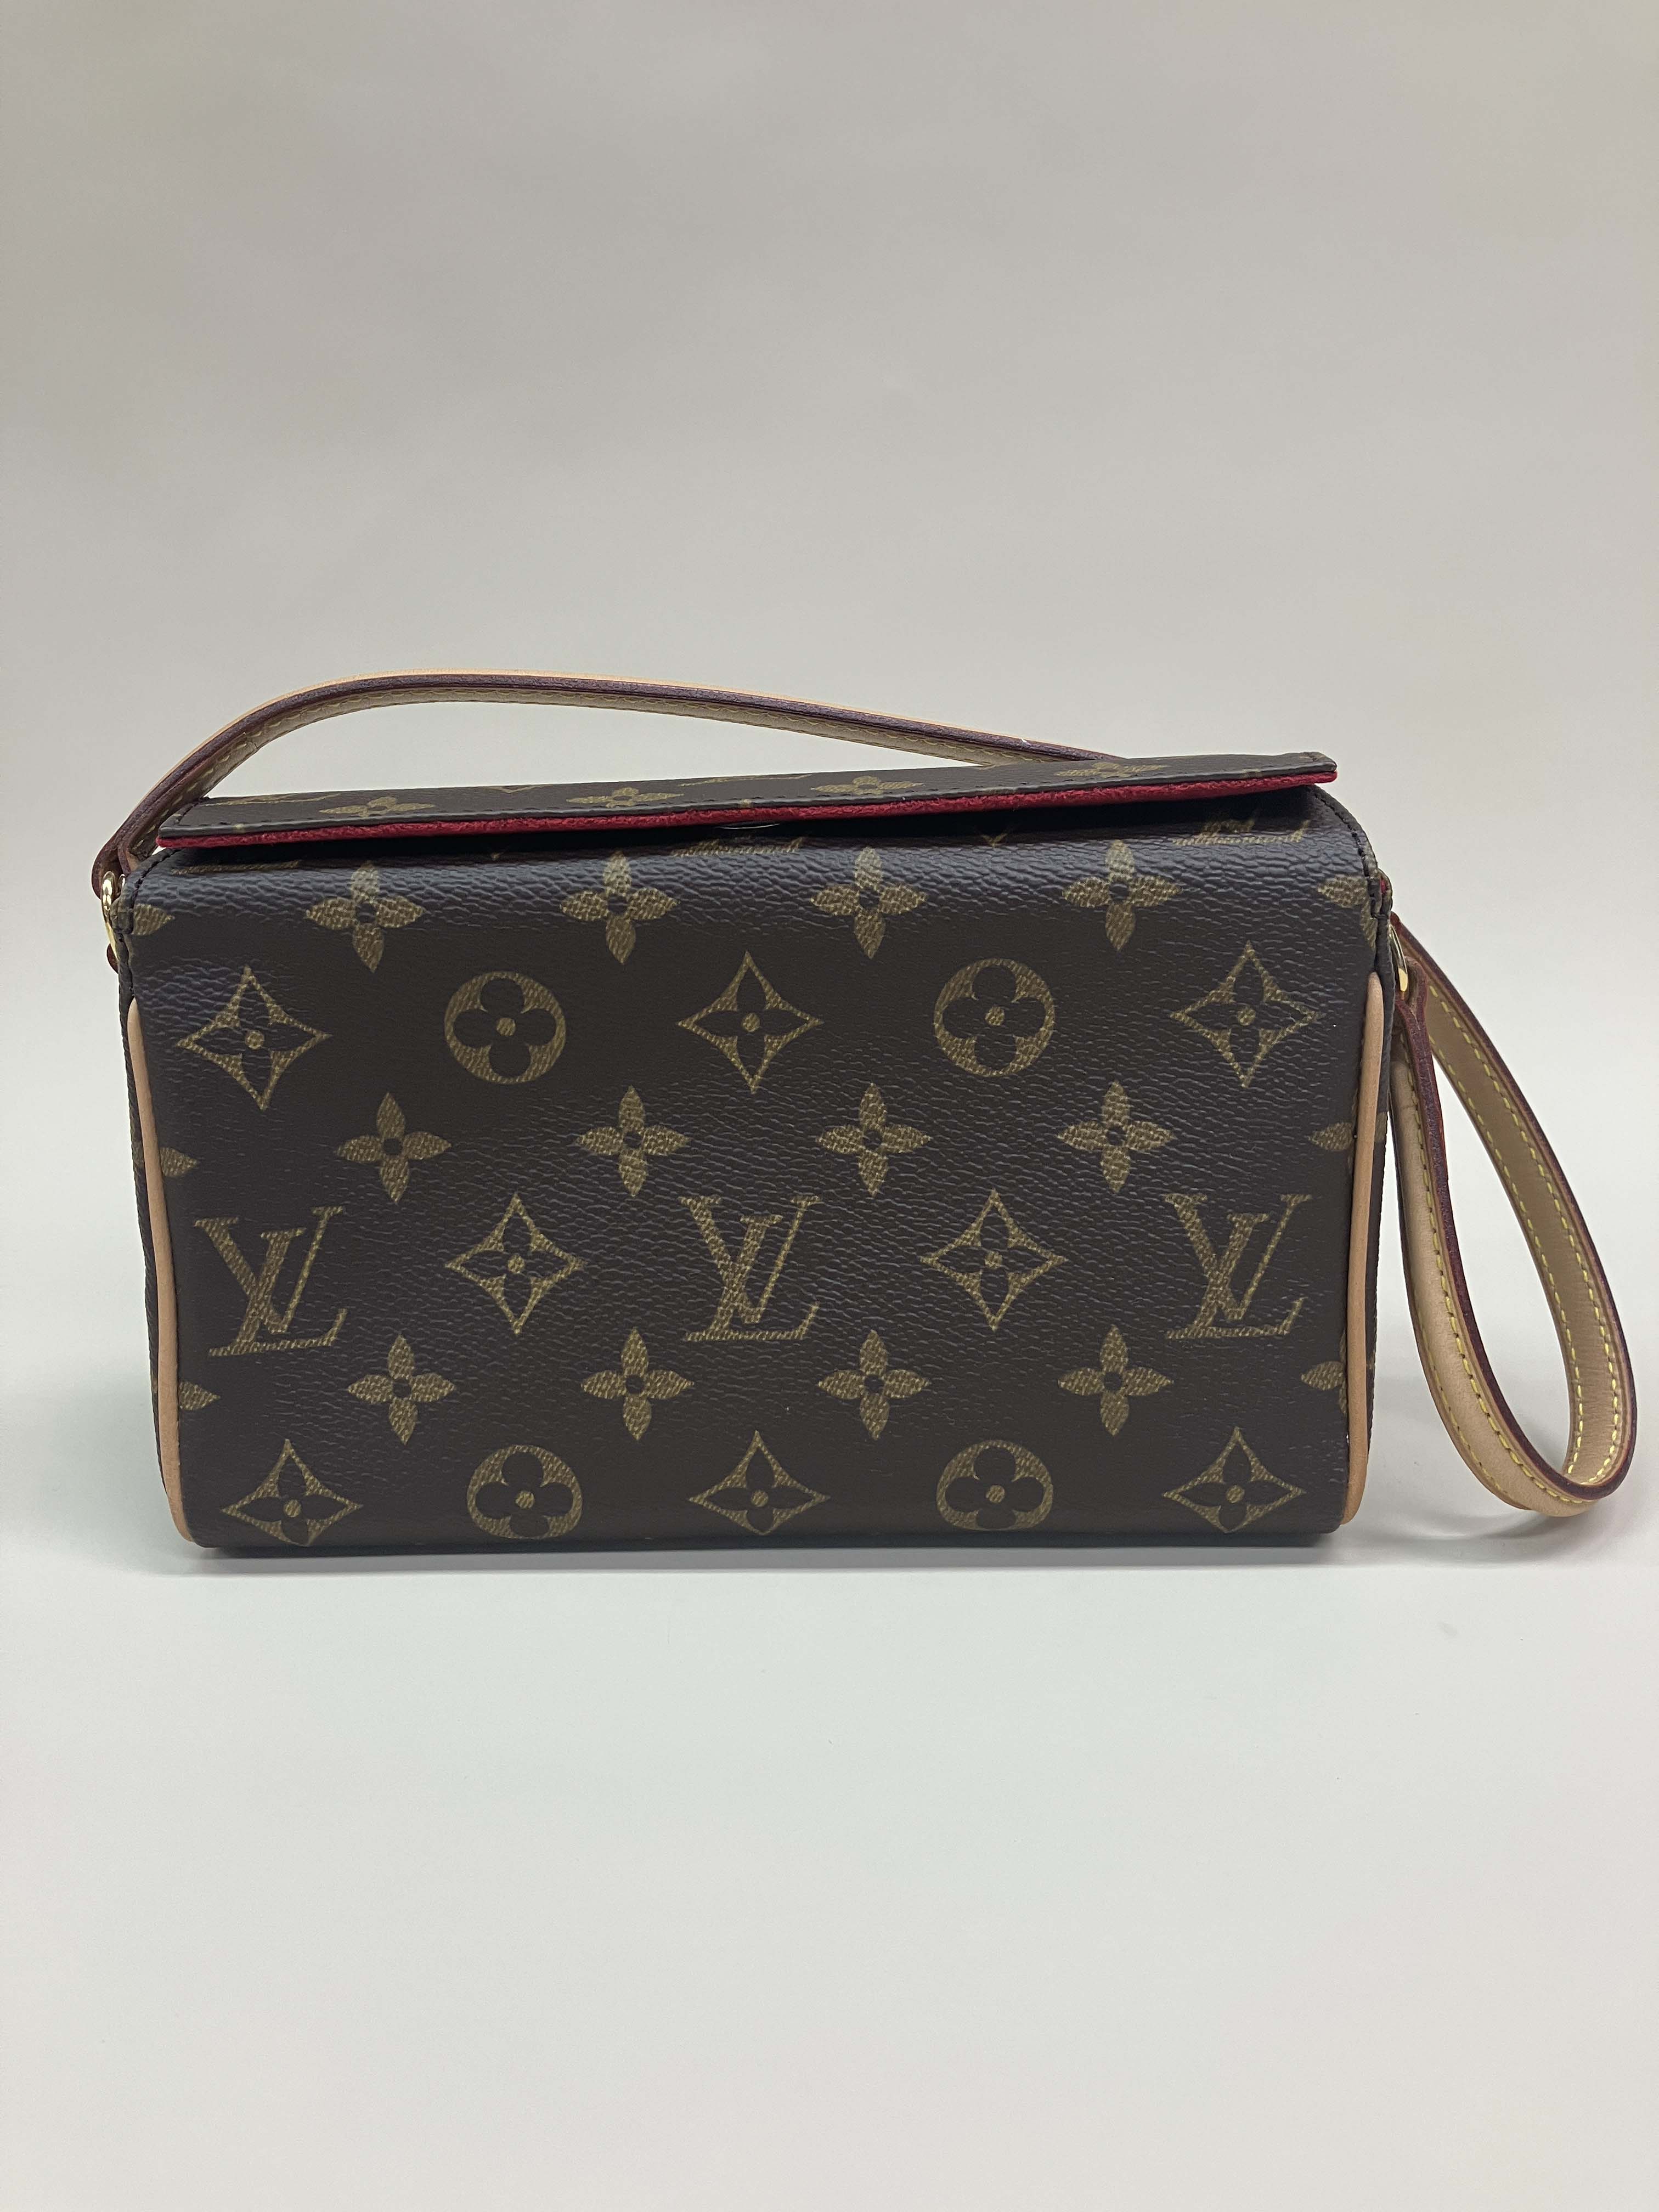 Louis Vuitton Recital Handbag